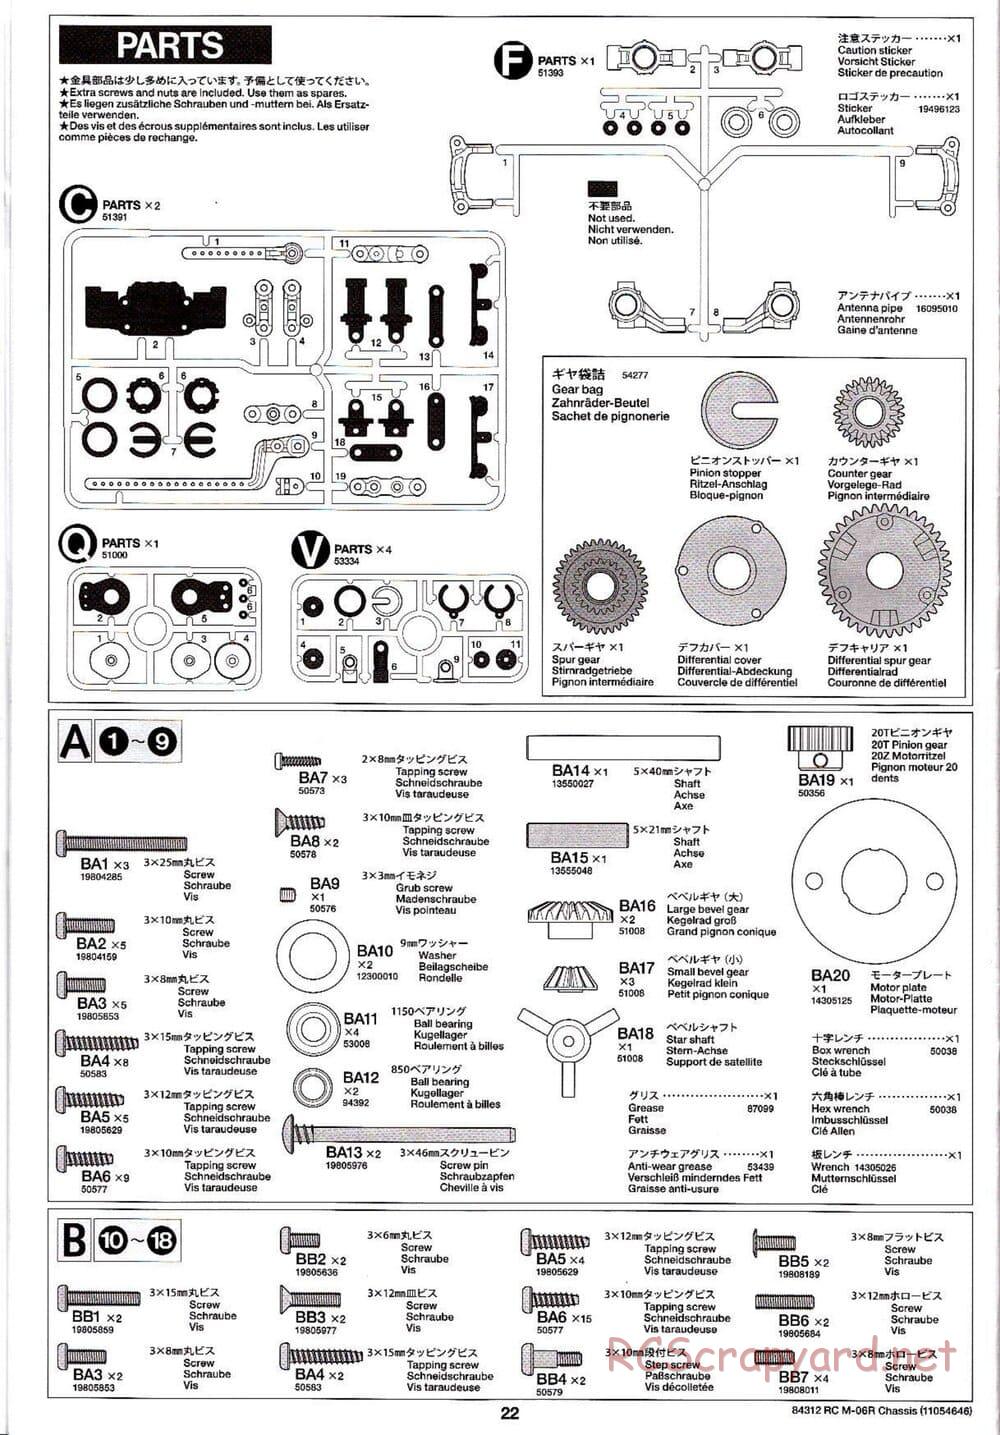 Tamiya - M-06R Chassis - Manual - Page 22